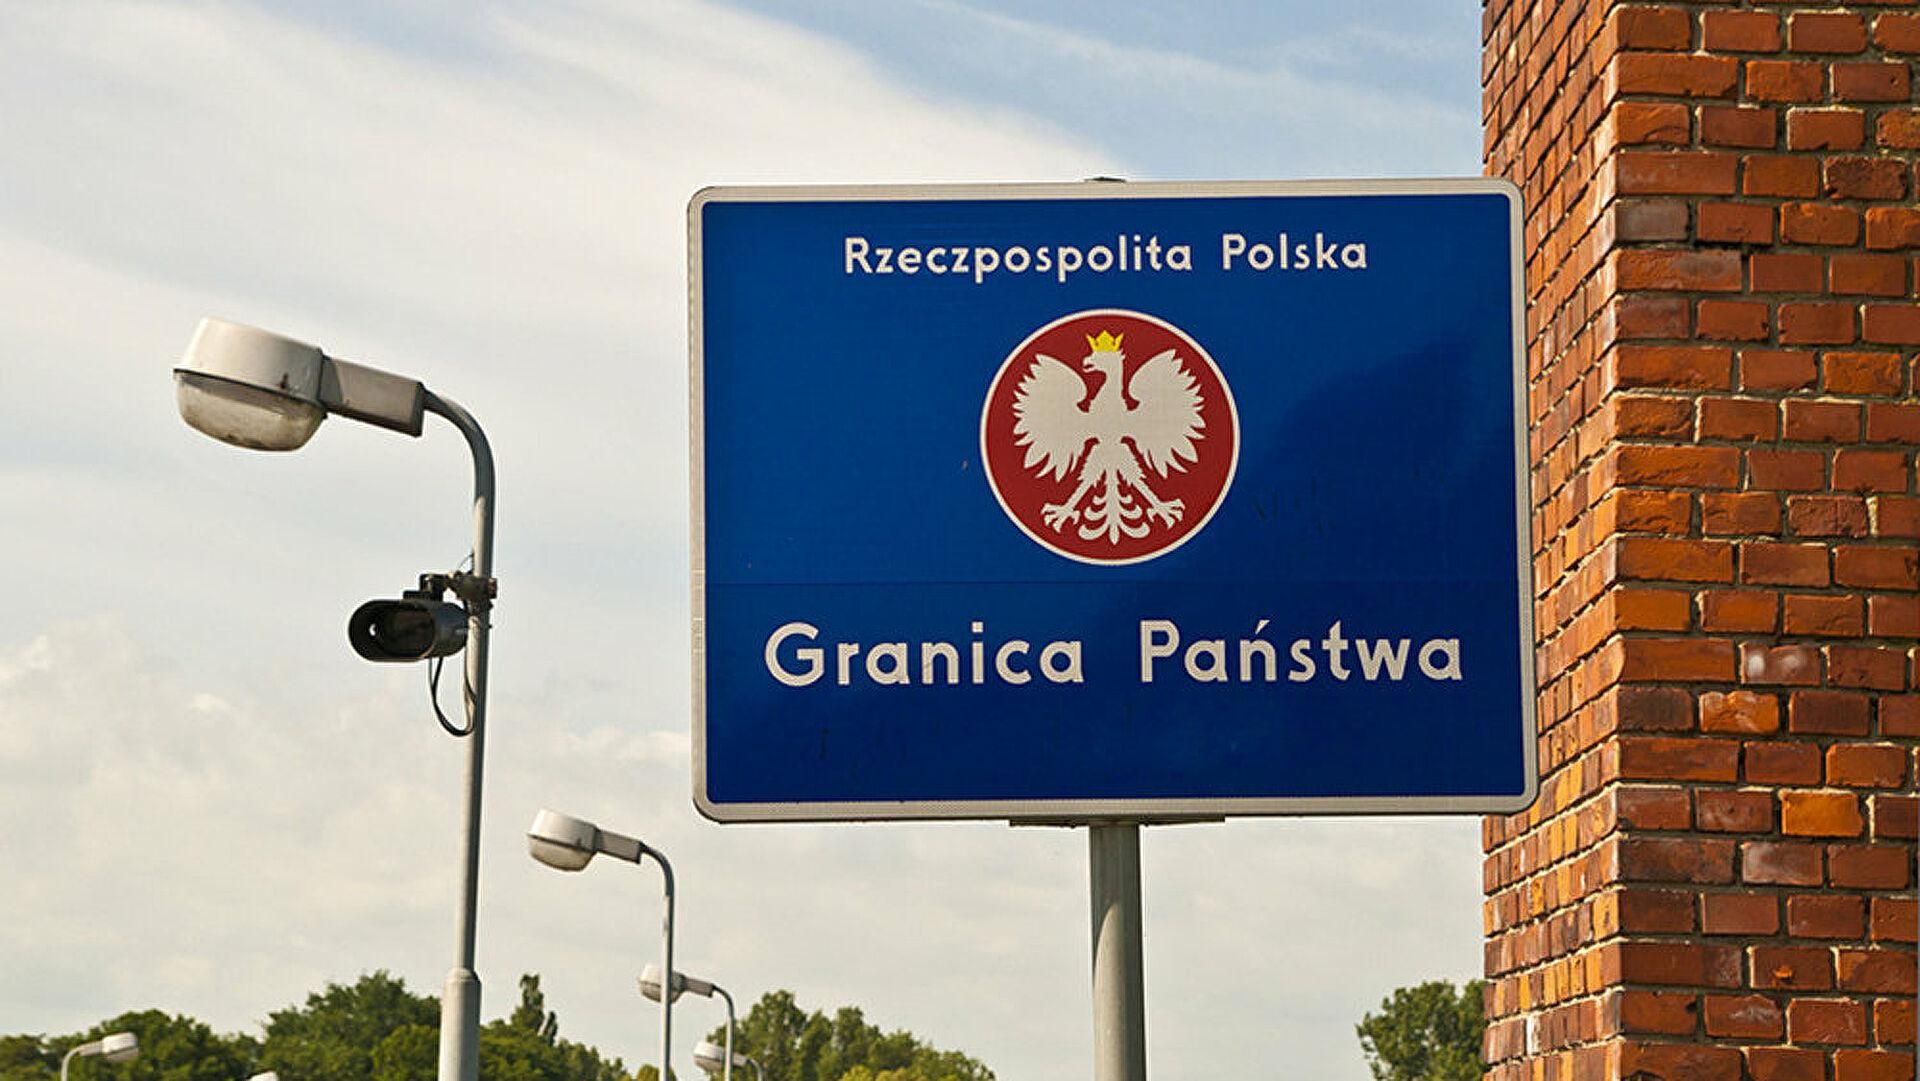 Гранаты и холостые выстрелы: Польша заявила, что Беларусь устраивает провокации на границе